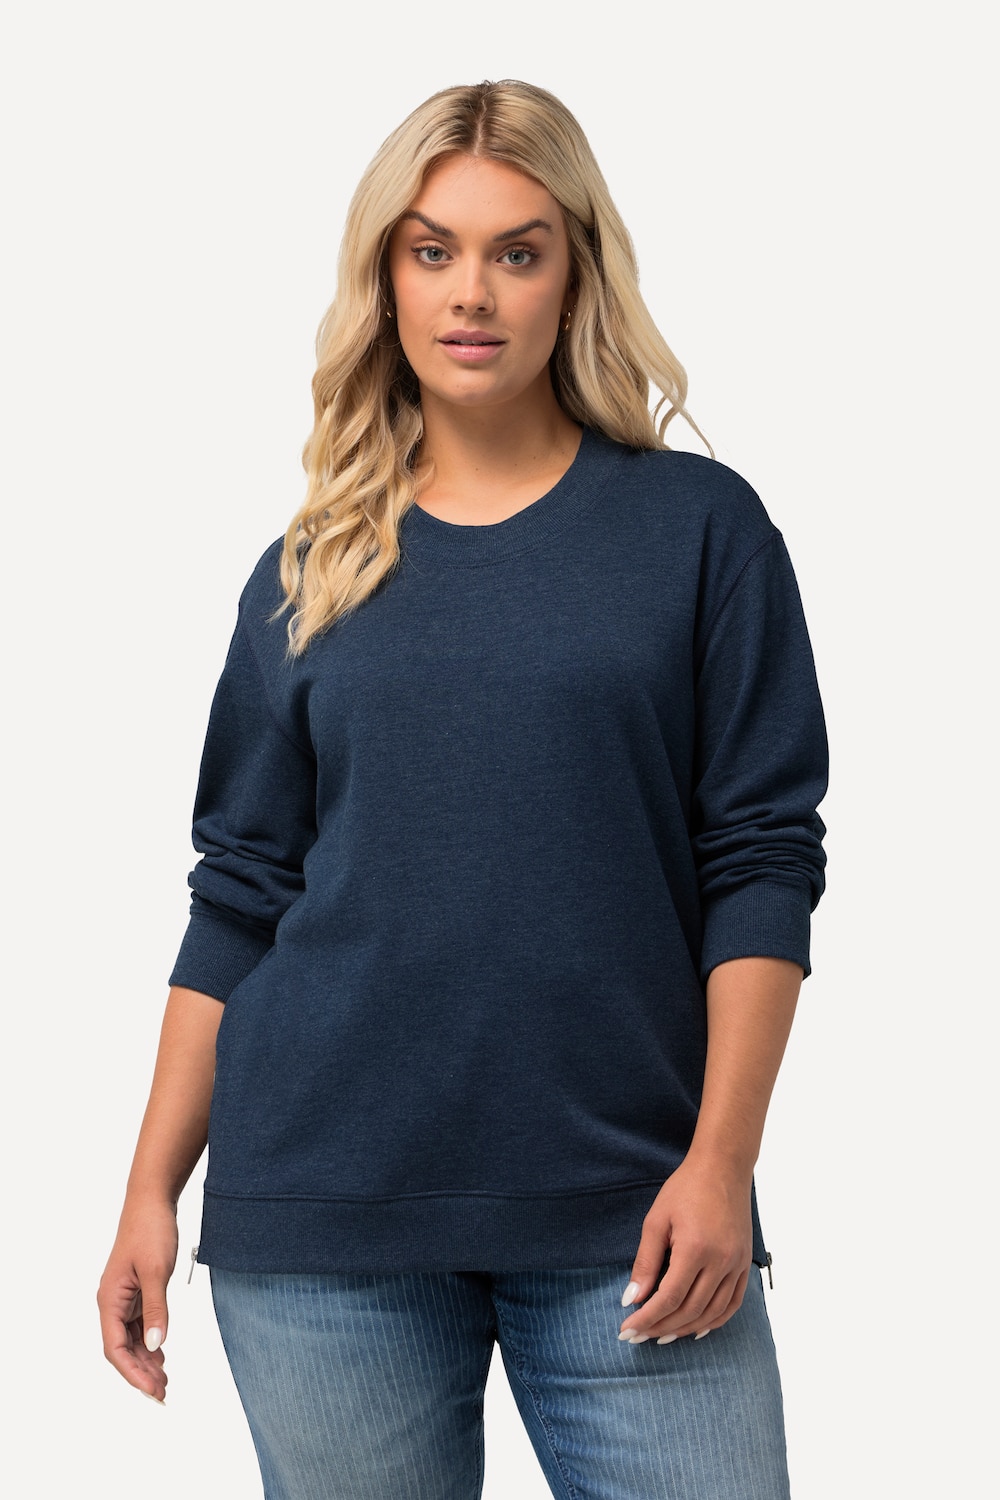 Grote Maten Sweatshirt, Dames, blauw, Maat: 50/52, Katoen/Polyester, Ulla Popken